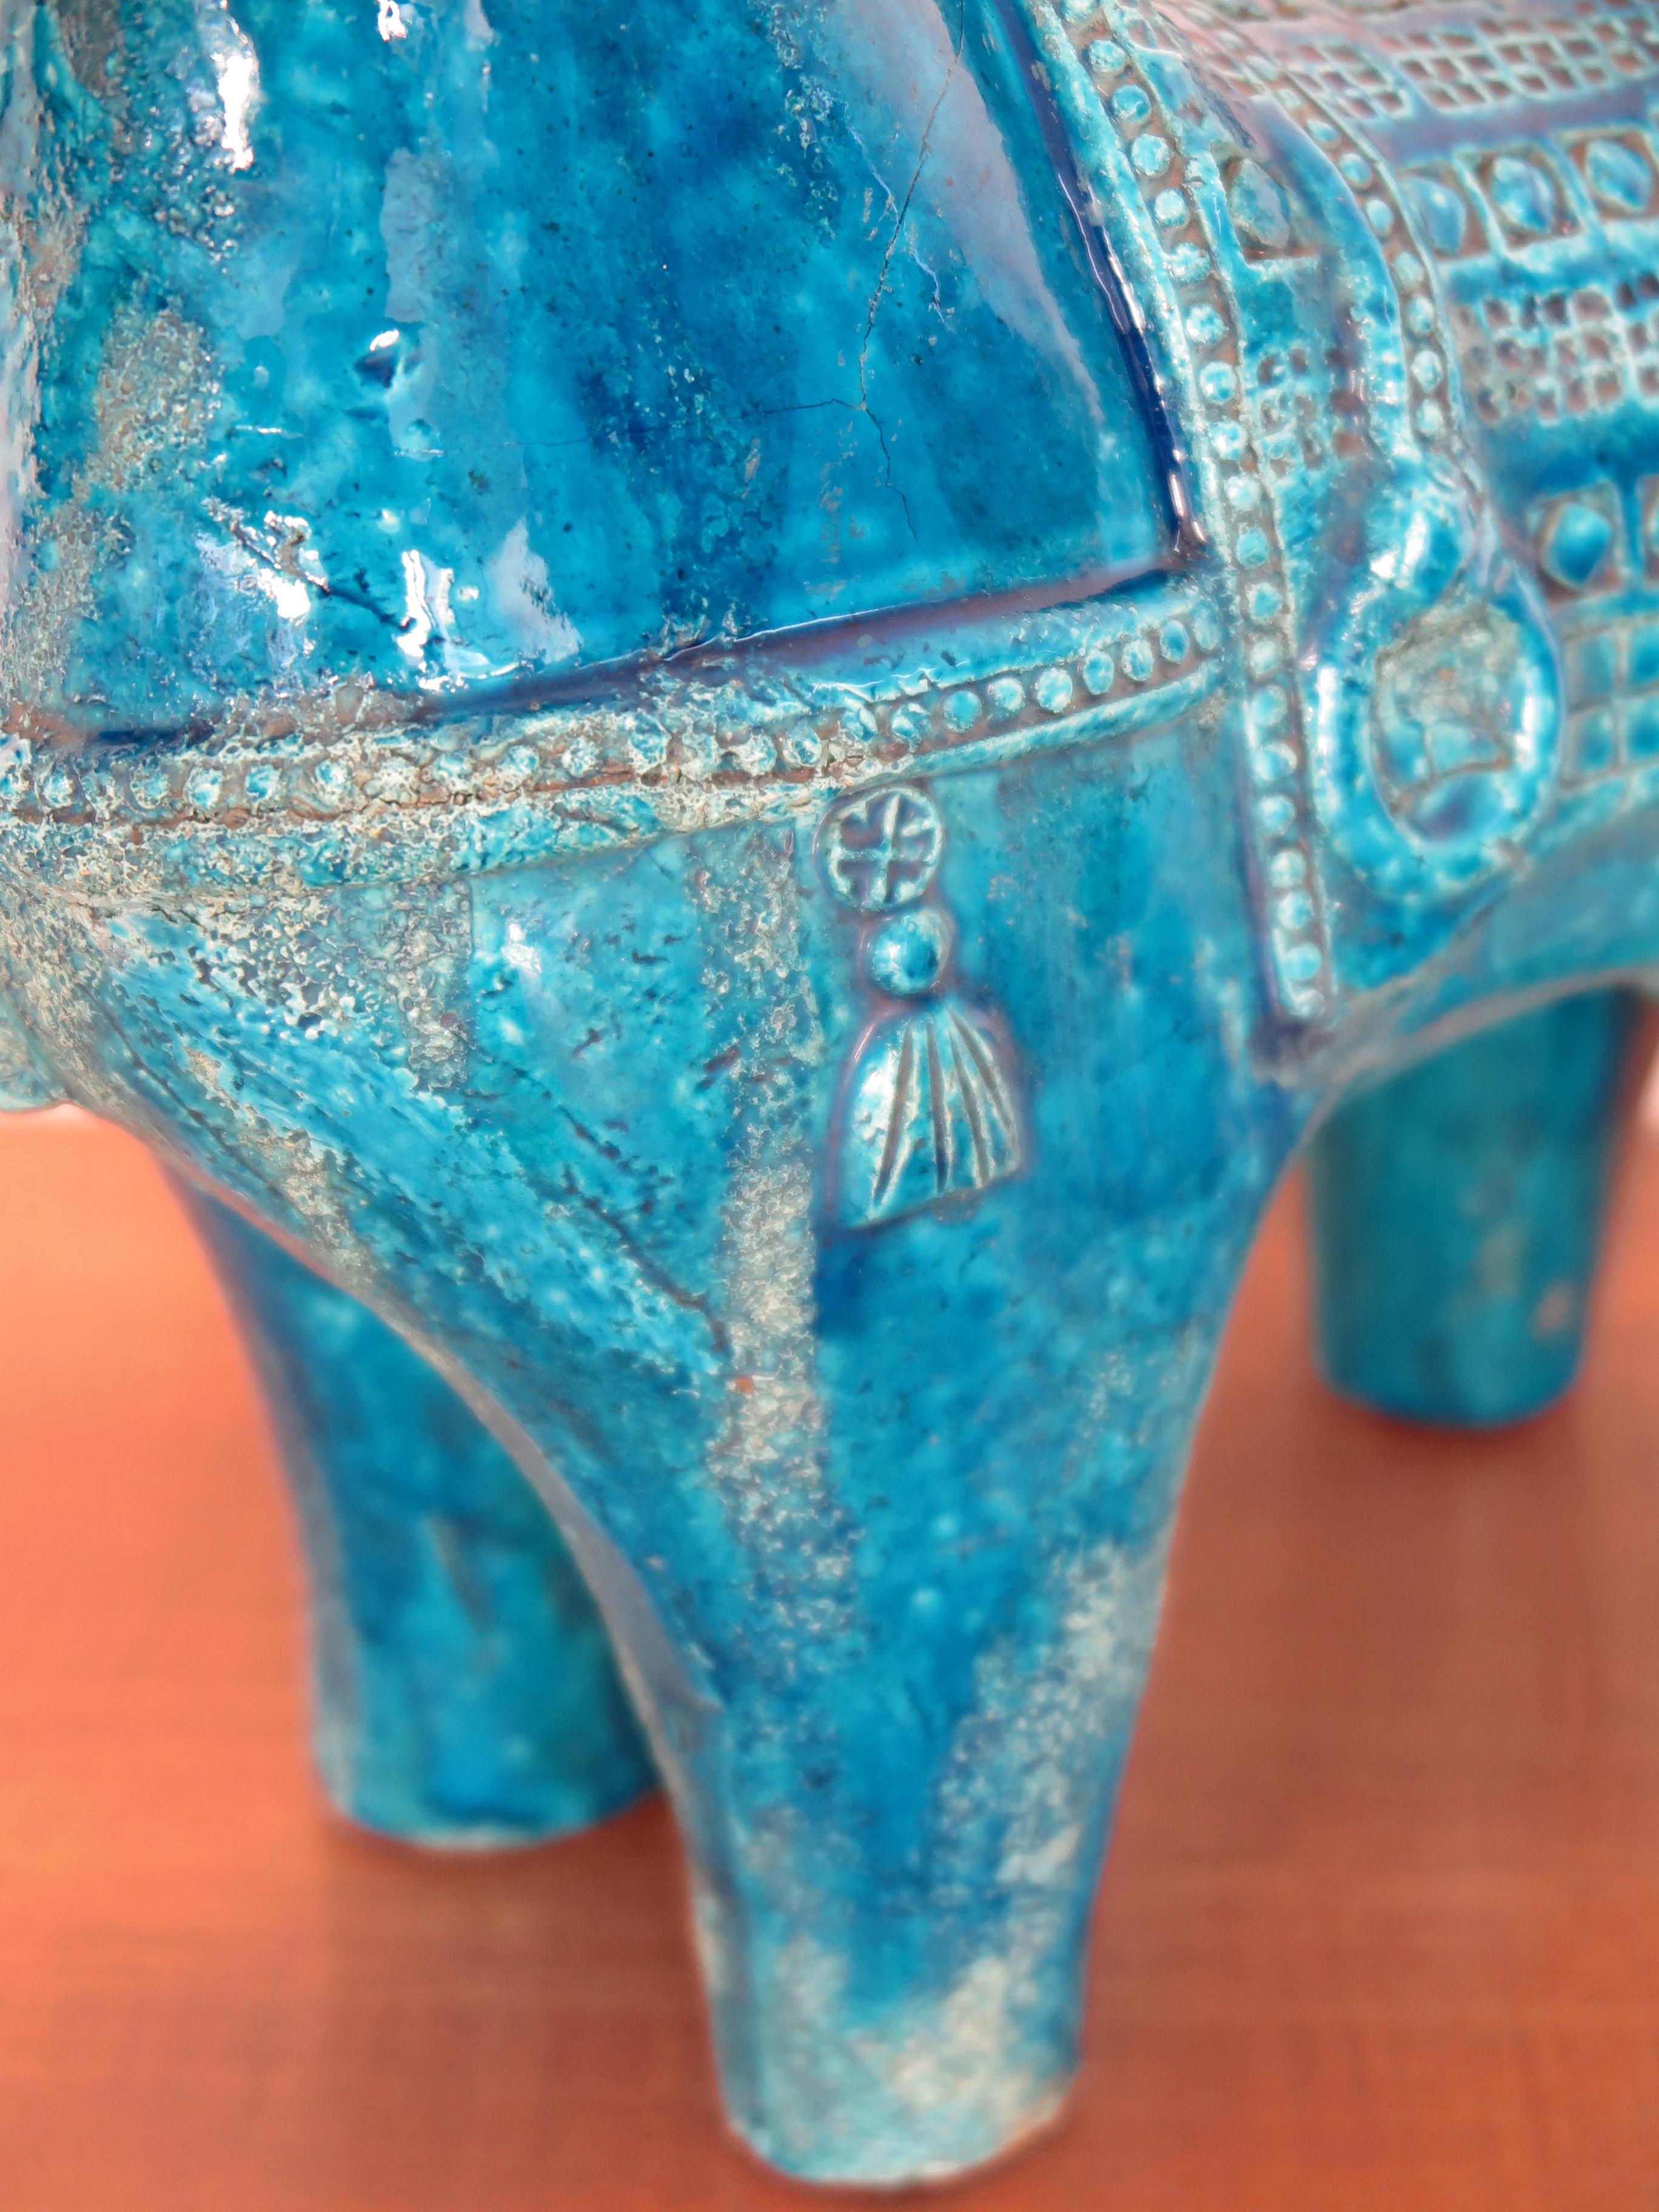 Aldo Londi for Bitossi Italian Midcentury Blue Sculpture Ceramic Horse 1960s For Sale 2